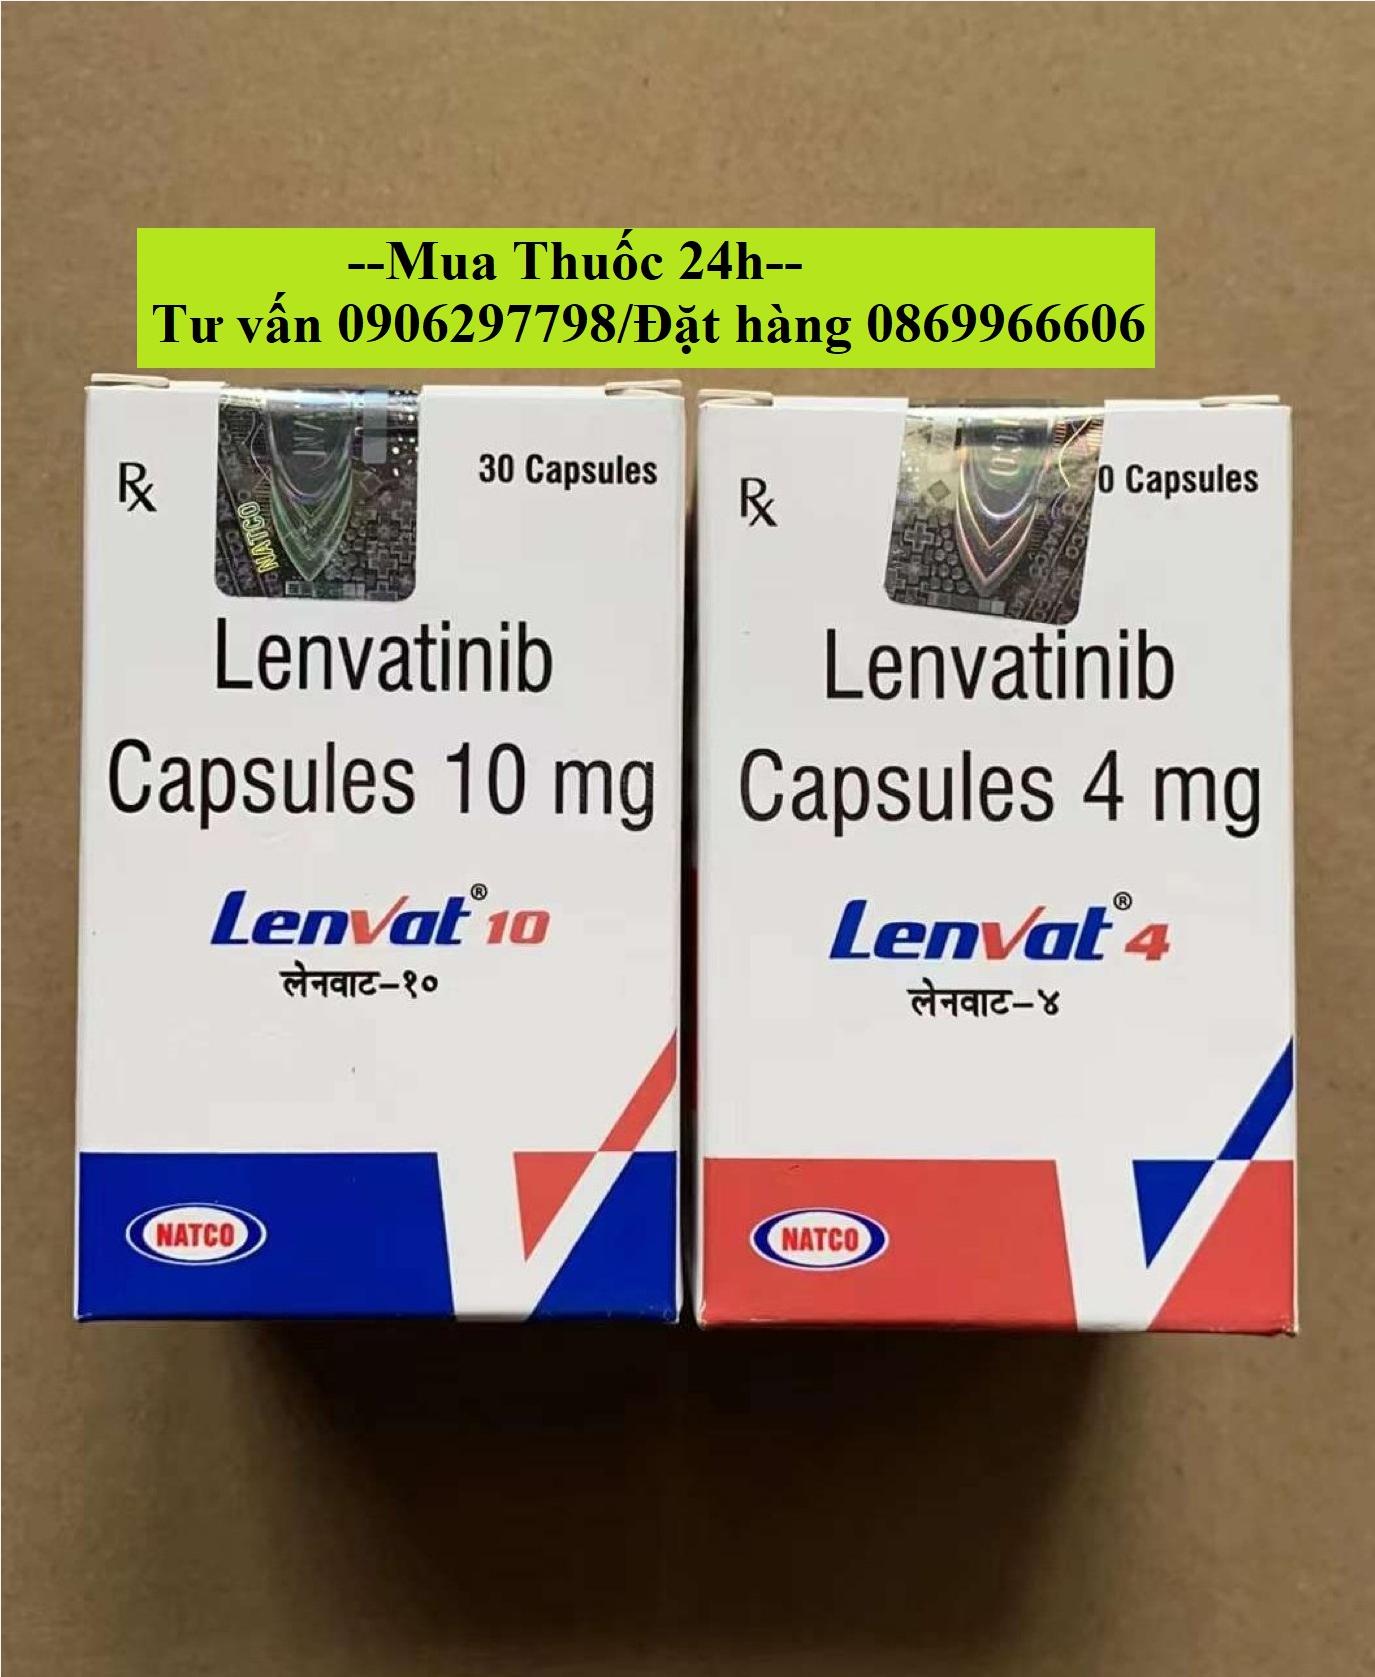 Thuốc Lenvat 4 Lenvatinib 4mg giá bao nhiêu mua ở đâu?